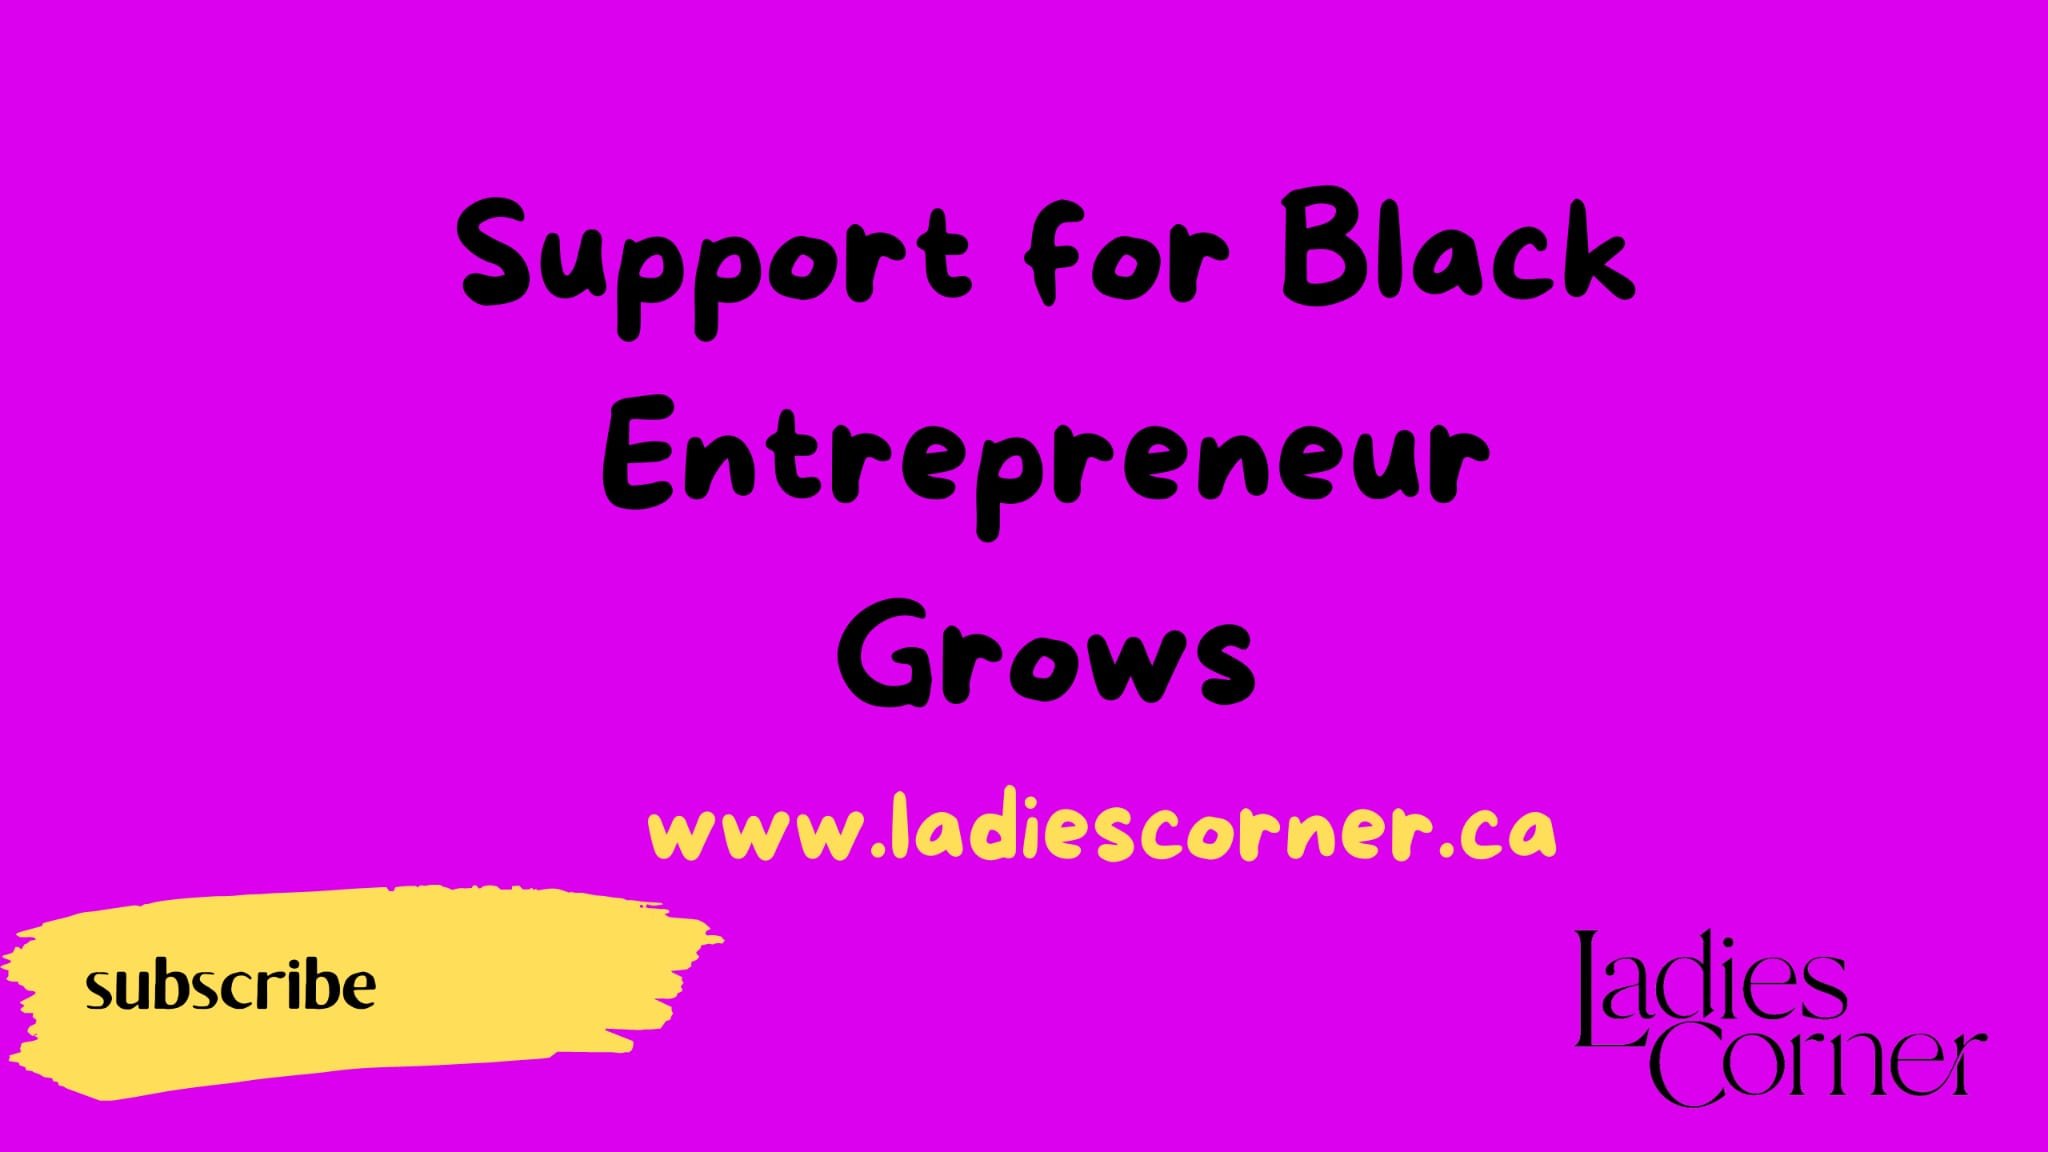 Support for Black Entrepreneurs Grows